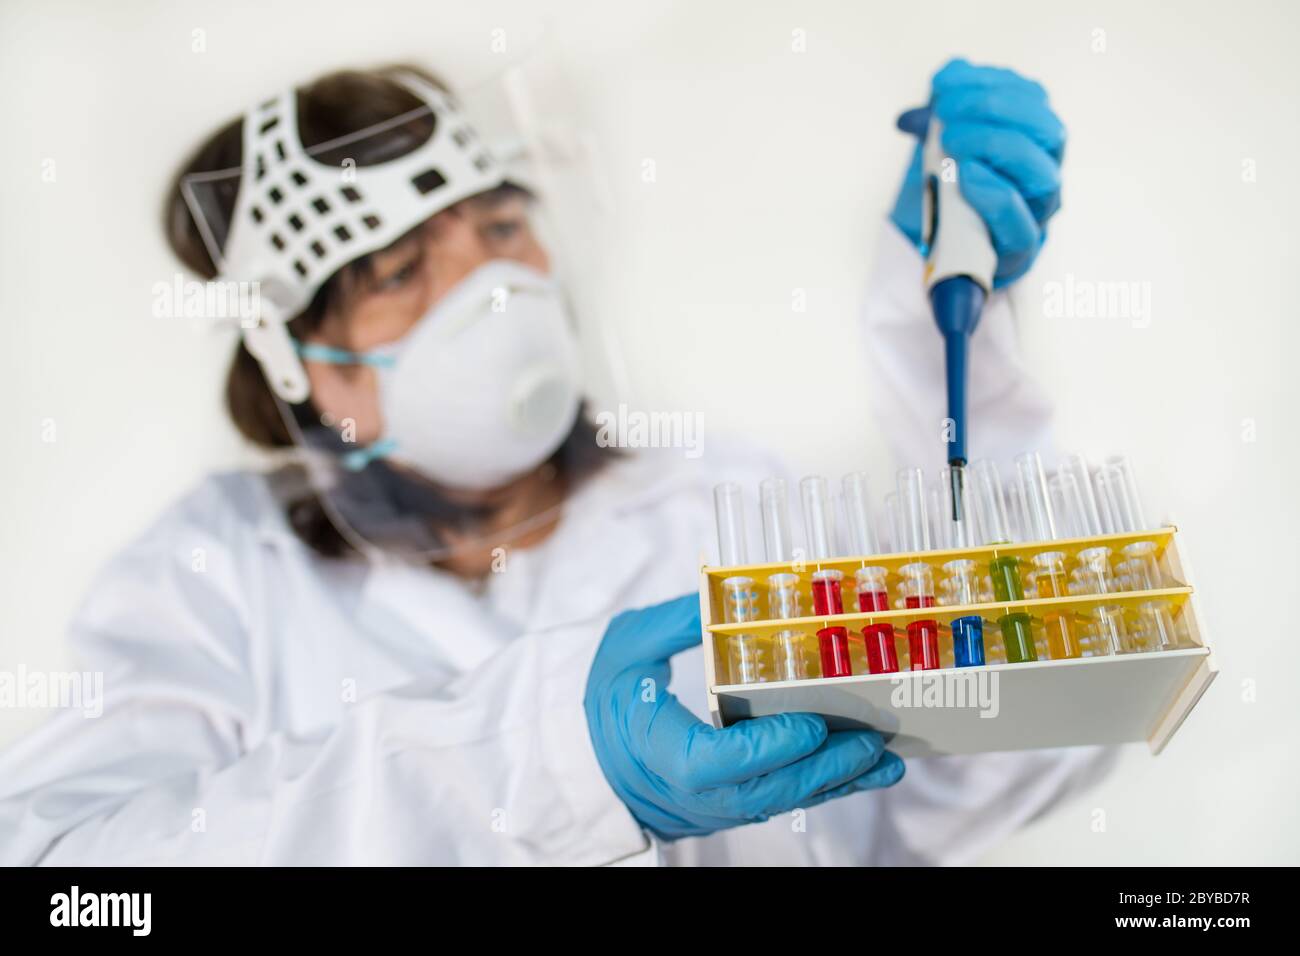 Labortechniker mit Pipette und Glasröhrchen im Rack. Wissenschaftler in Schutzkleidung und Handschuhe. Farbige Flüssigkeiten in Laborgeräten. Stockfoto